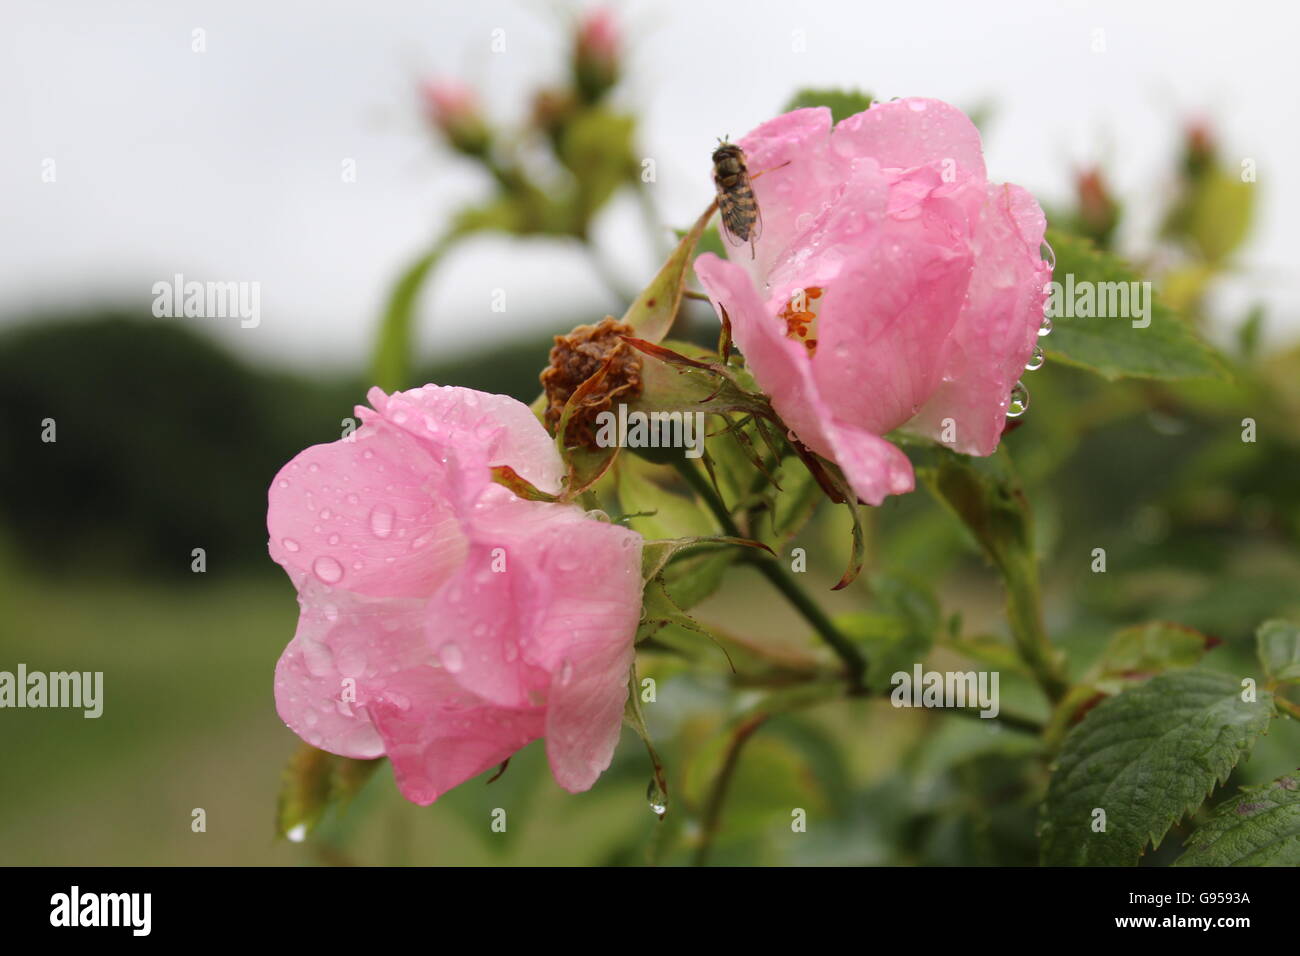 Dos de color rosa pálido, rosas salvajes cubiertos de gotas de lluvia, con una avispa sobre una de las rosas. Foto de stock